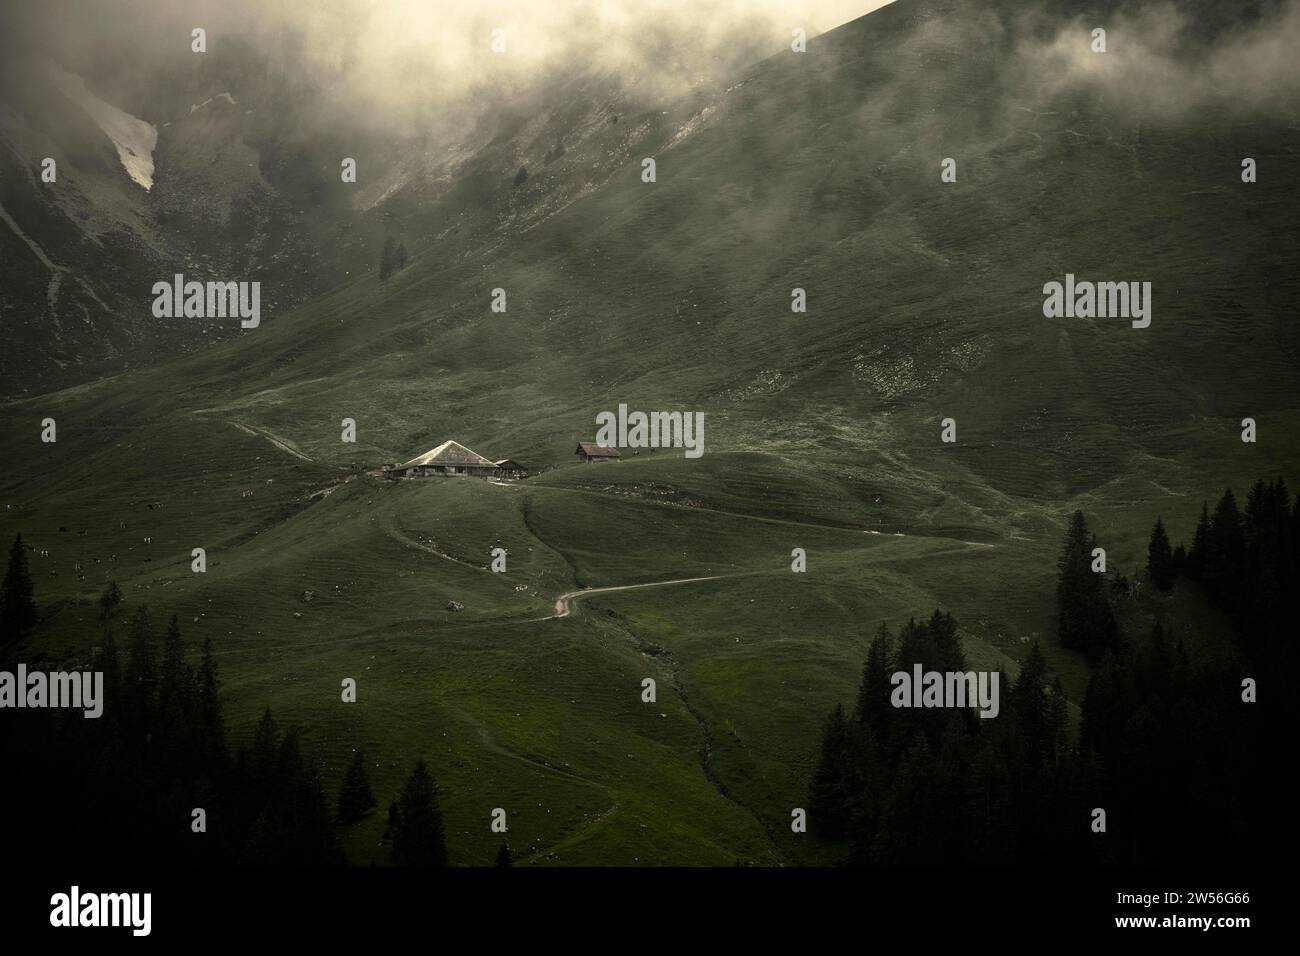 Cabane alpine dans un paysage montagneux sombre et brumeux, Interlaken, Oberland bernois, Suisse Banque D'Images